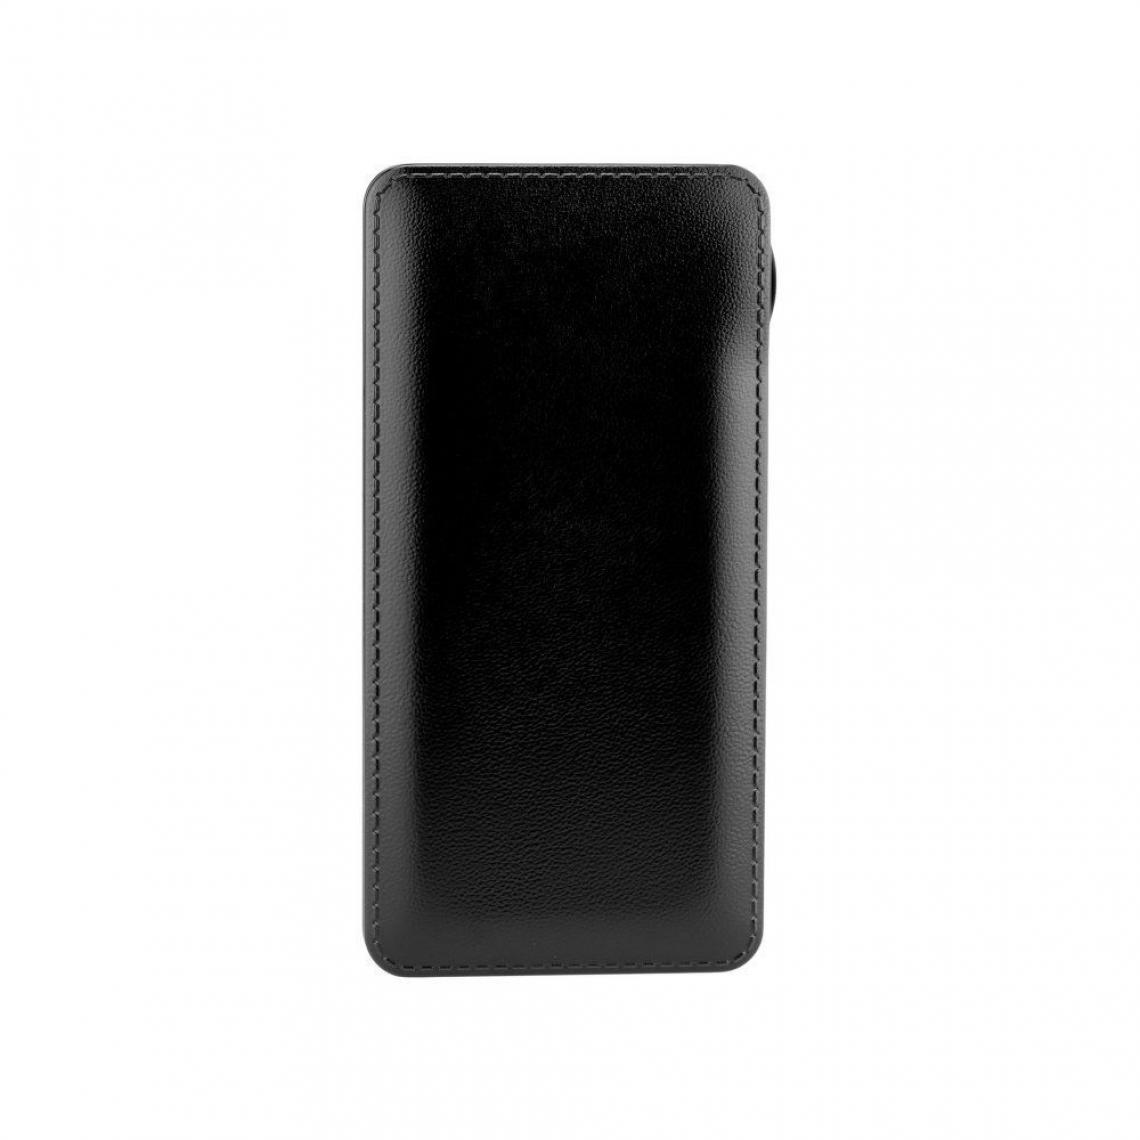 Ozzzo - Chargeur batterie externe 20000 mAh powerbank ozzzo noir pour Motorola Moto G4 Plus - Autres accessoires smartphone